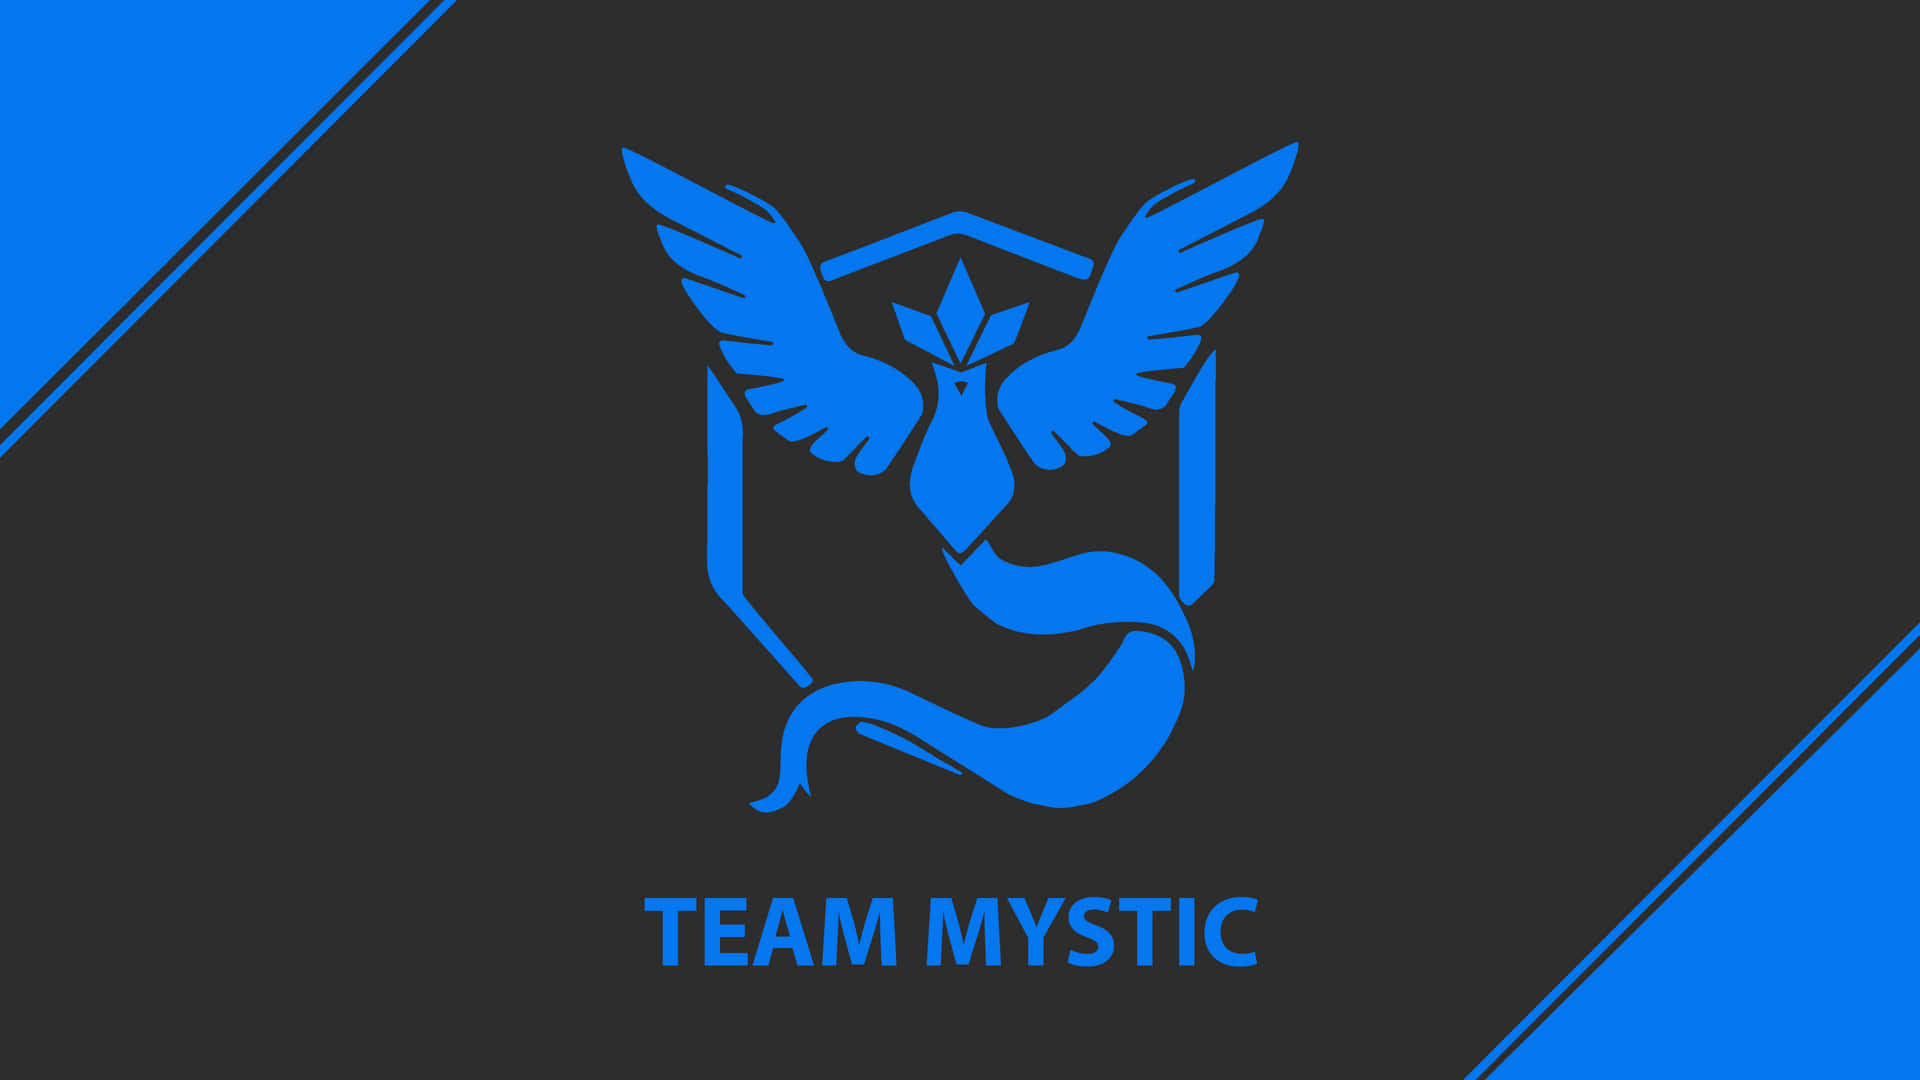 Team Mystic 3840 X 2160 Wallpaper